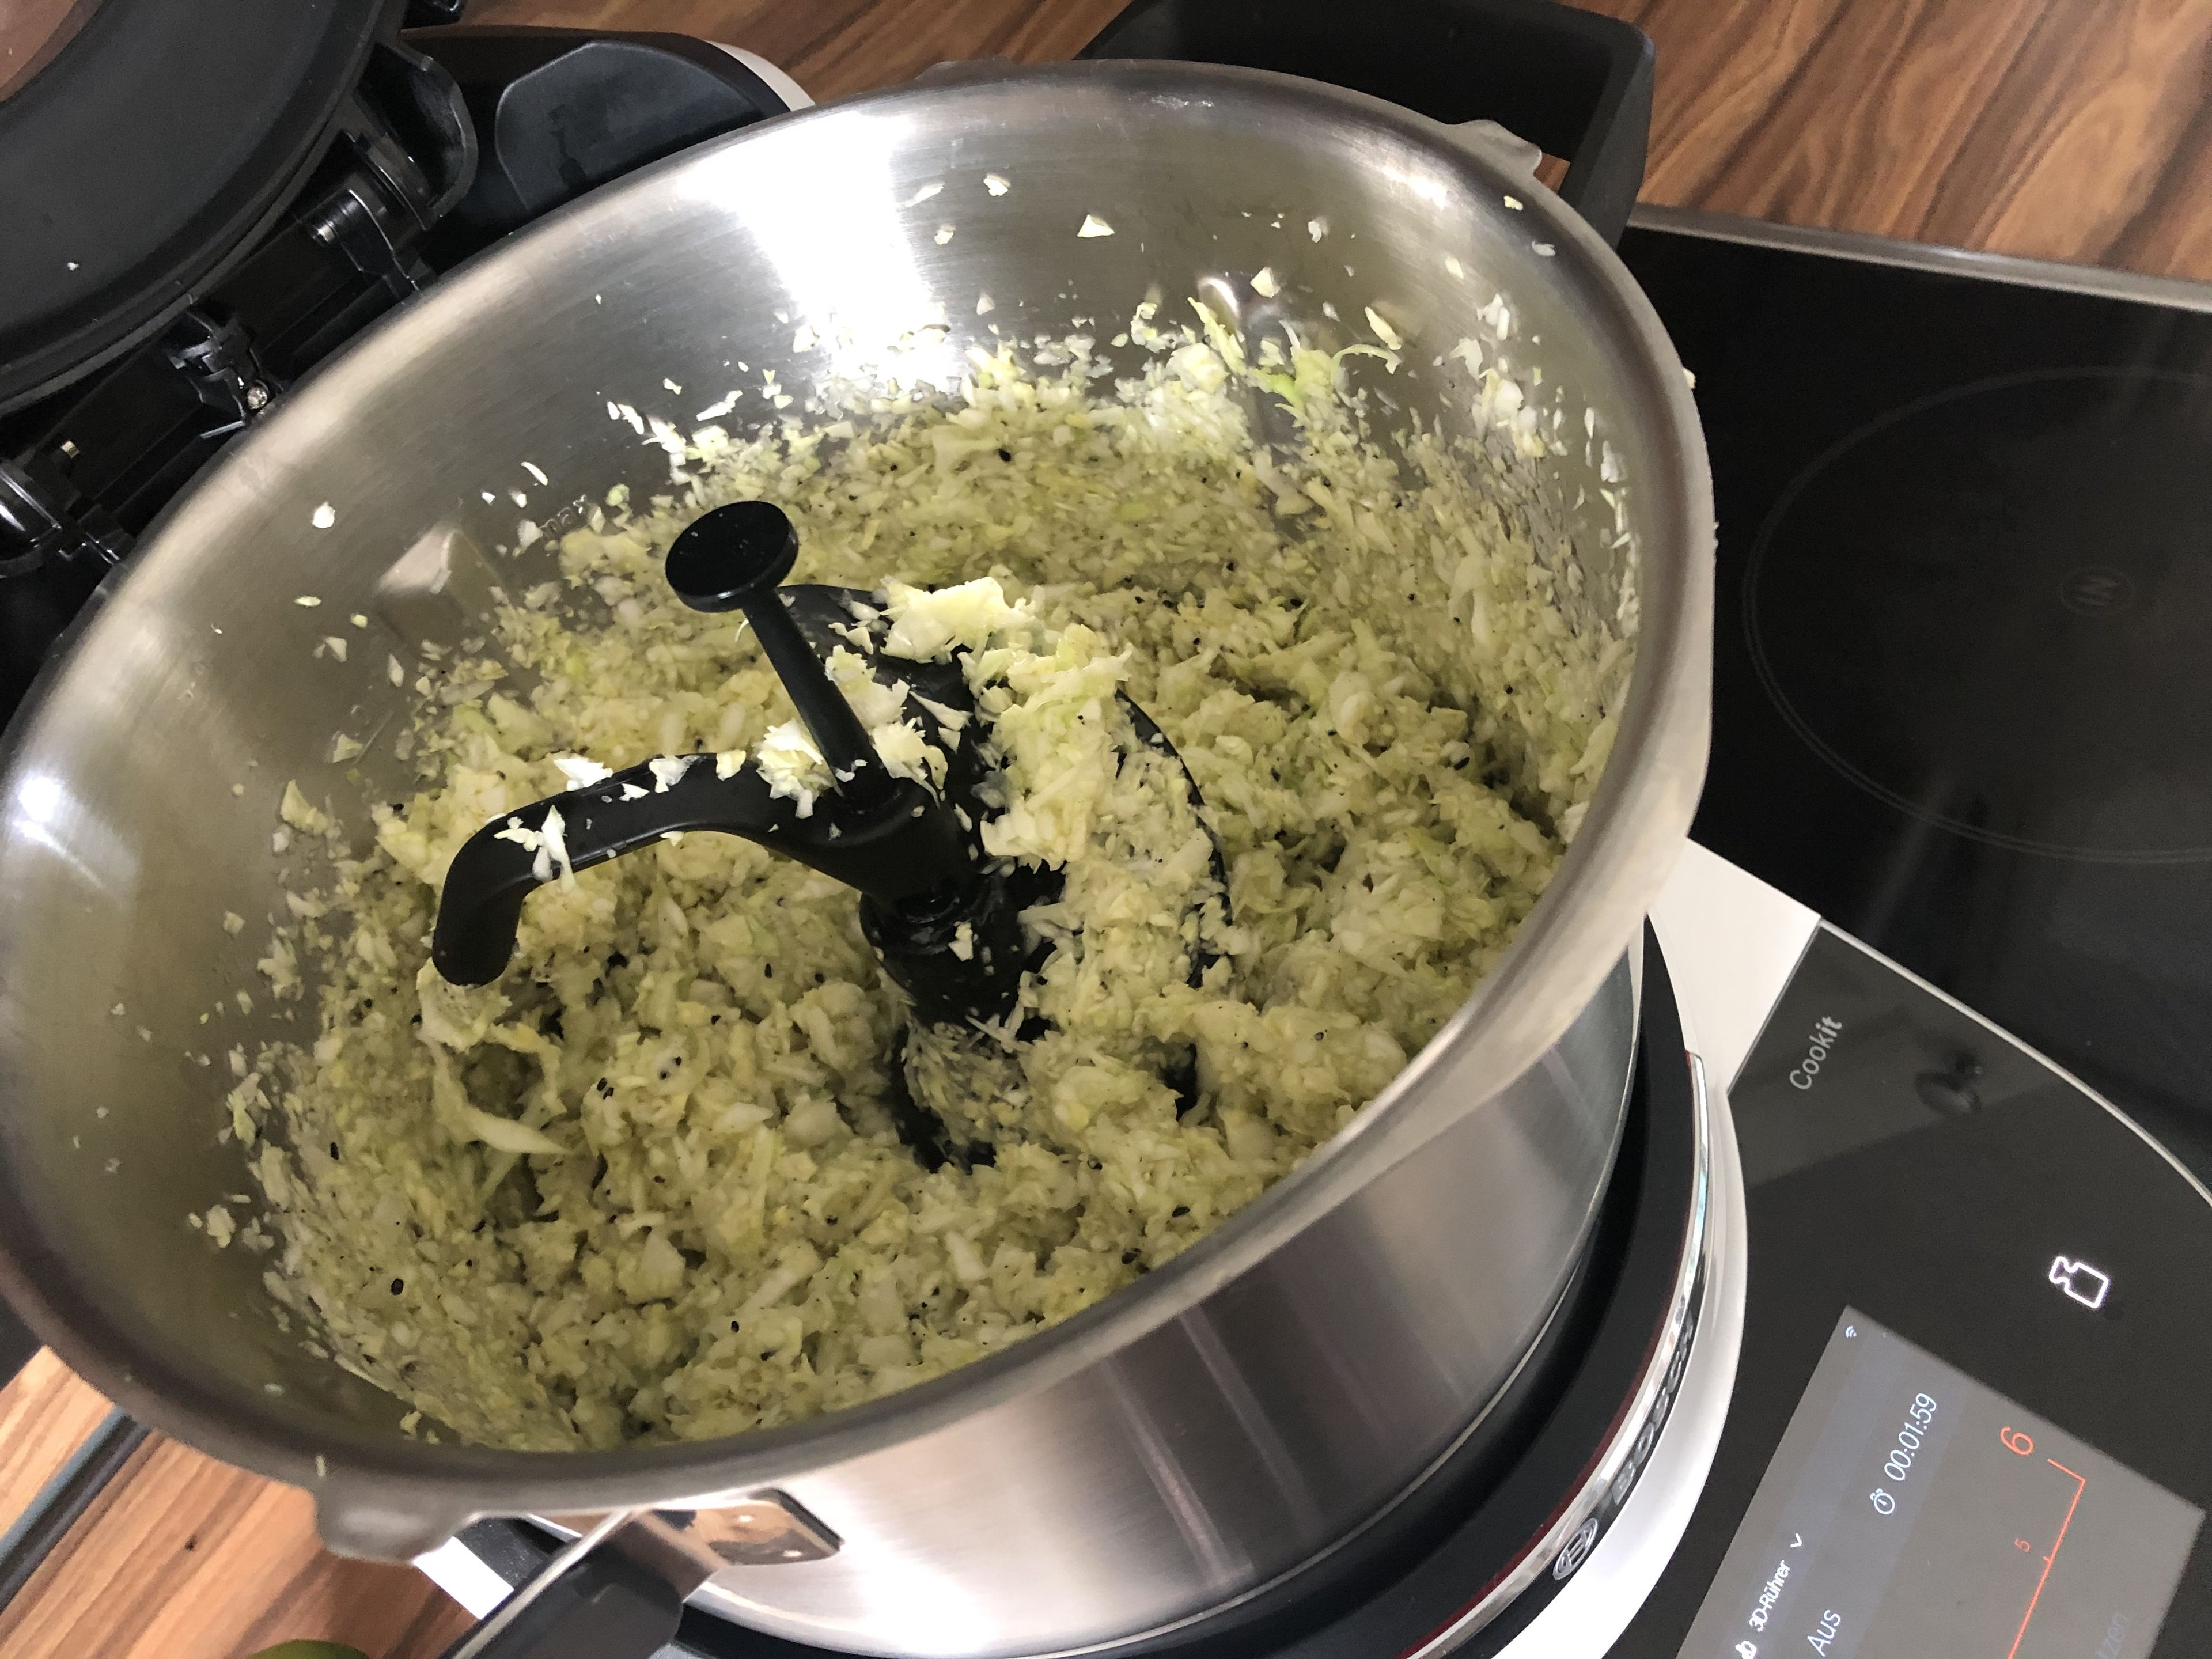 Cookit 3D-Rührer entnehmen und den Salat in eine Schüssel umfüllen, abdecken und für mindestens 30 Min. im Kühlschrank ziehen lassen. Tipp: Je länger er durchgezogen ist, umso leckerer.